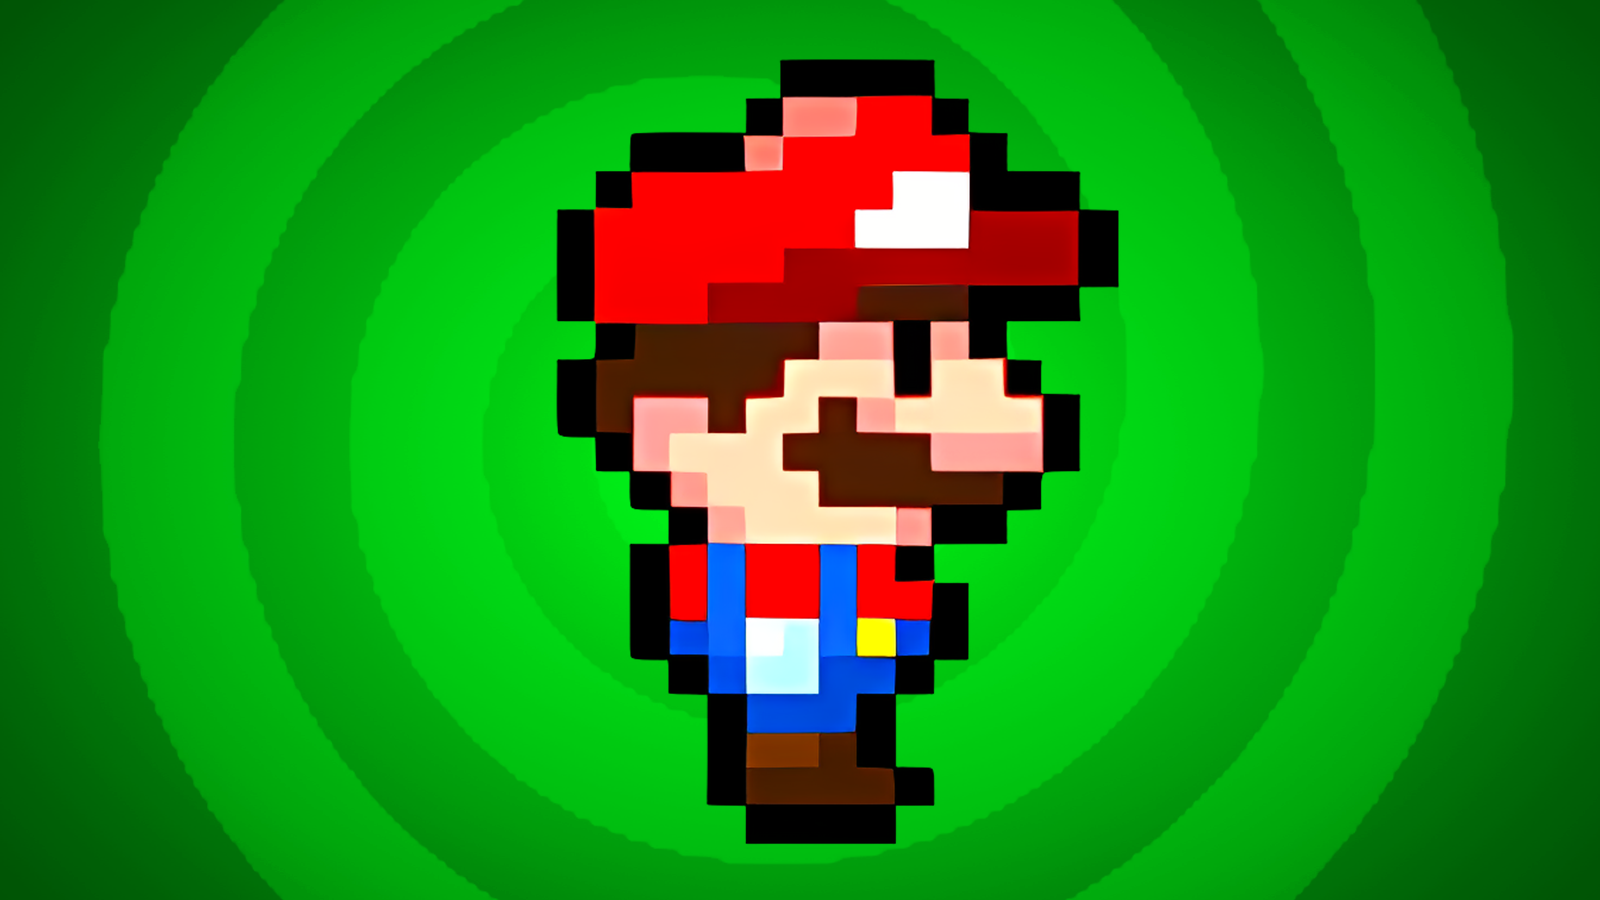 Mario Running Chibi Pixel